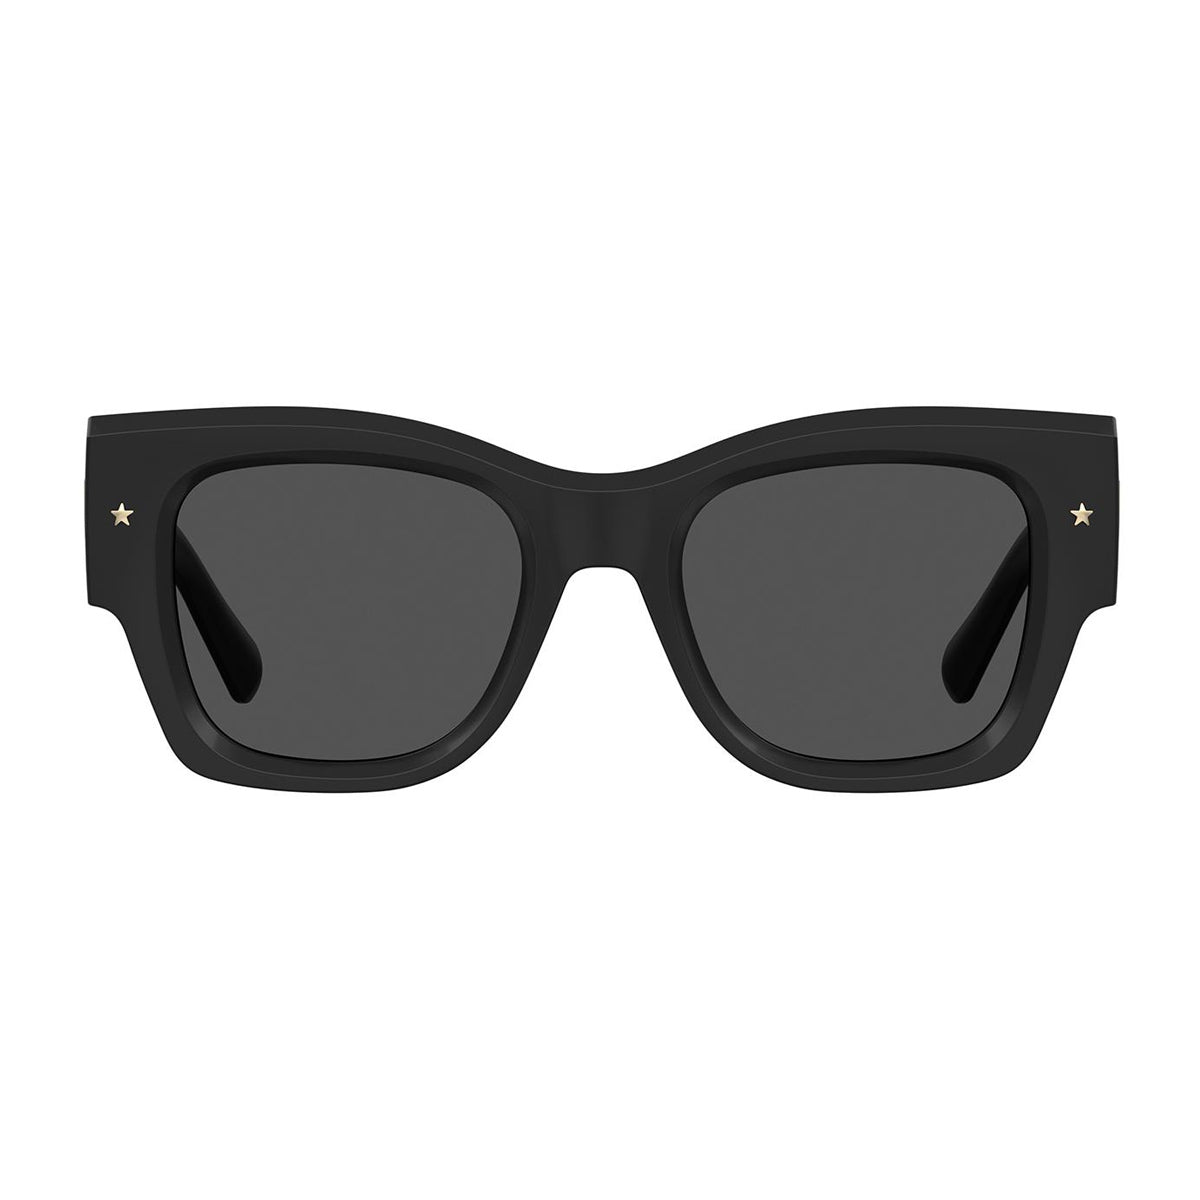 Cf 7023/s 807/IR-Occhiali da sole-Chiara Ferragni-La collezione di occhiali di Chiara Ferragni rappresenta un'armoniosa fusione di stile e creatività. Questi occhiali, ideati dalla celebre influencer, sono curati nei minimi dettagli e caratterizzati da un design cool, chic e all'avanguardia. Questo modello presenta una montatura oversize dalla forma squadrata. Le aste decorate con l'oversized eyelike ed il motivo 3D sono perfettamente equilibrati da una sofisticata stella in metallo sul frontale. - Dresso